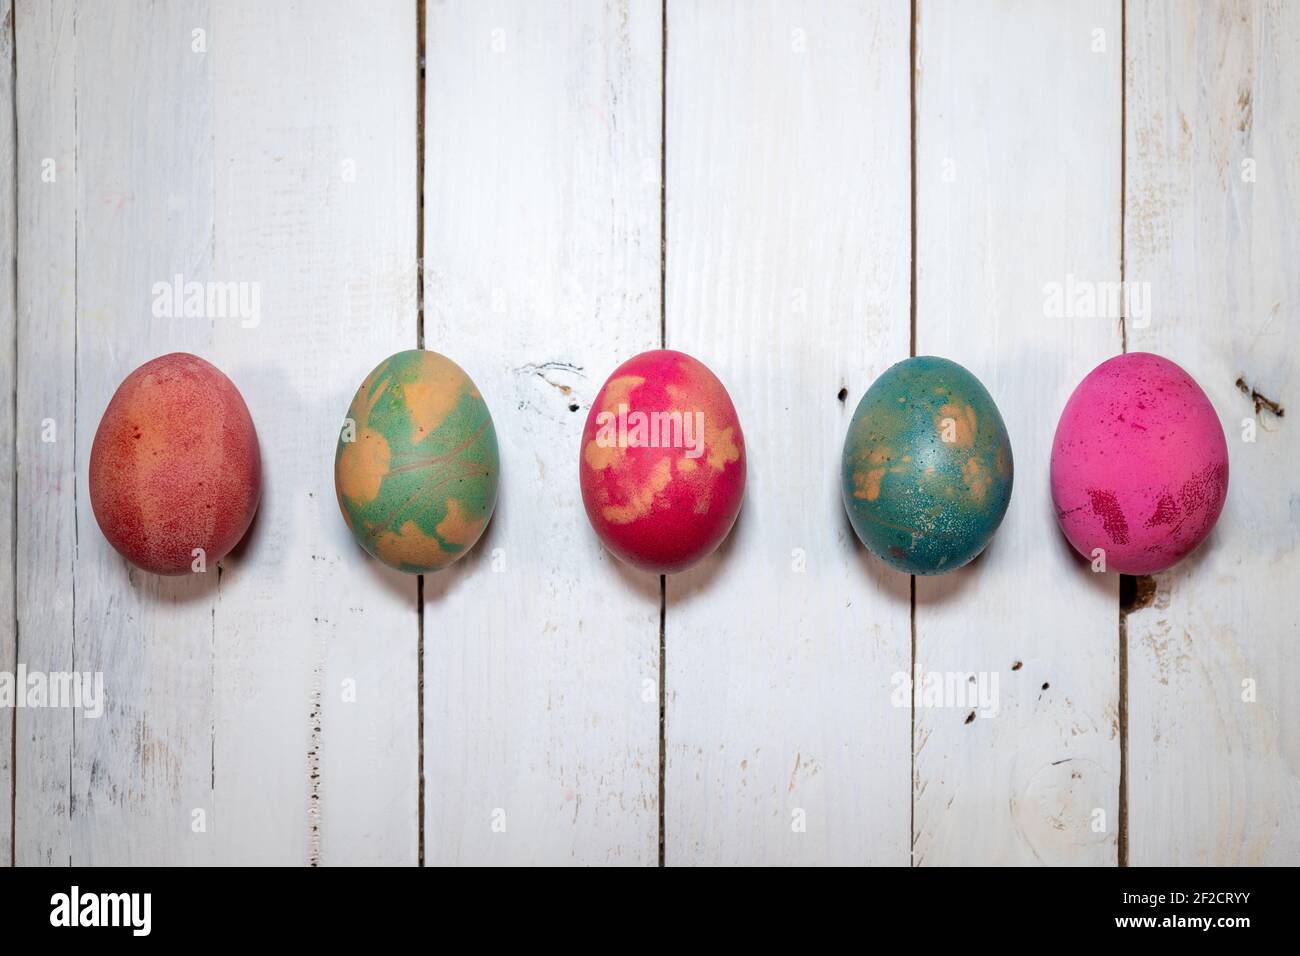 Un modo naturale fatto in casa per decorare le uova di Pasqua. Cinque uova bollite dipinte con colori, foglie e fiori su un elegante tavolo in legno shabby. Foto Stock